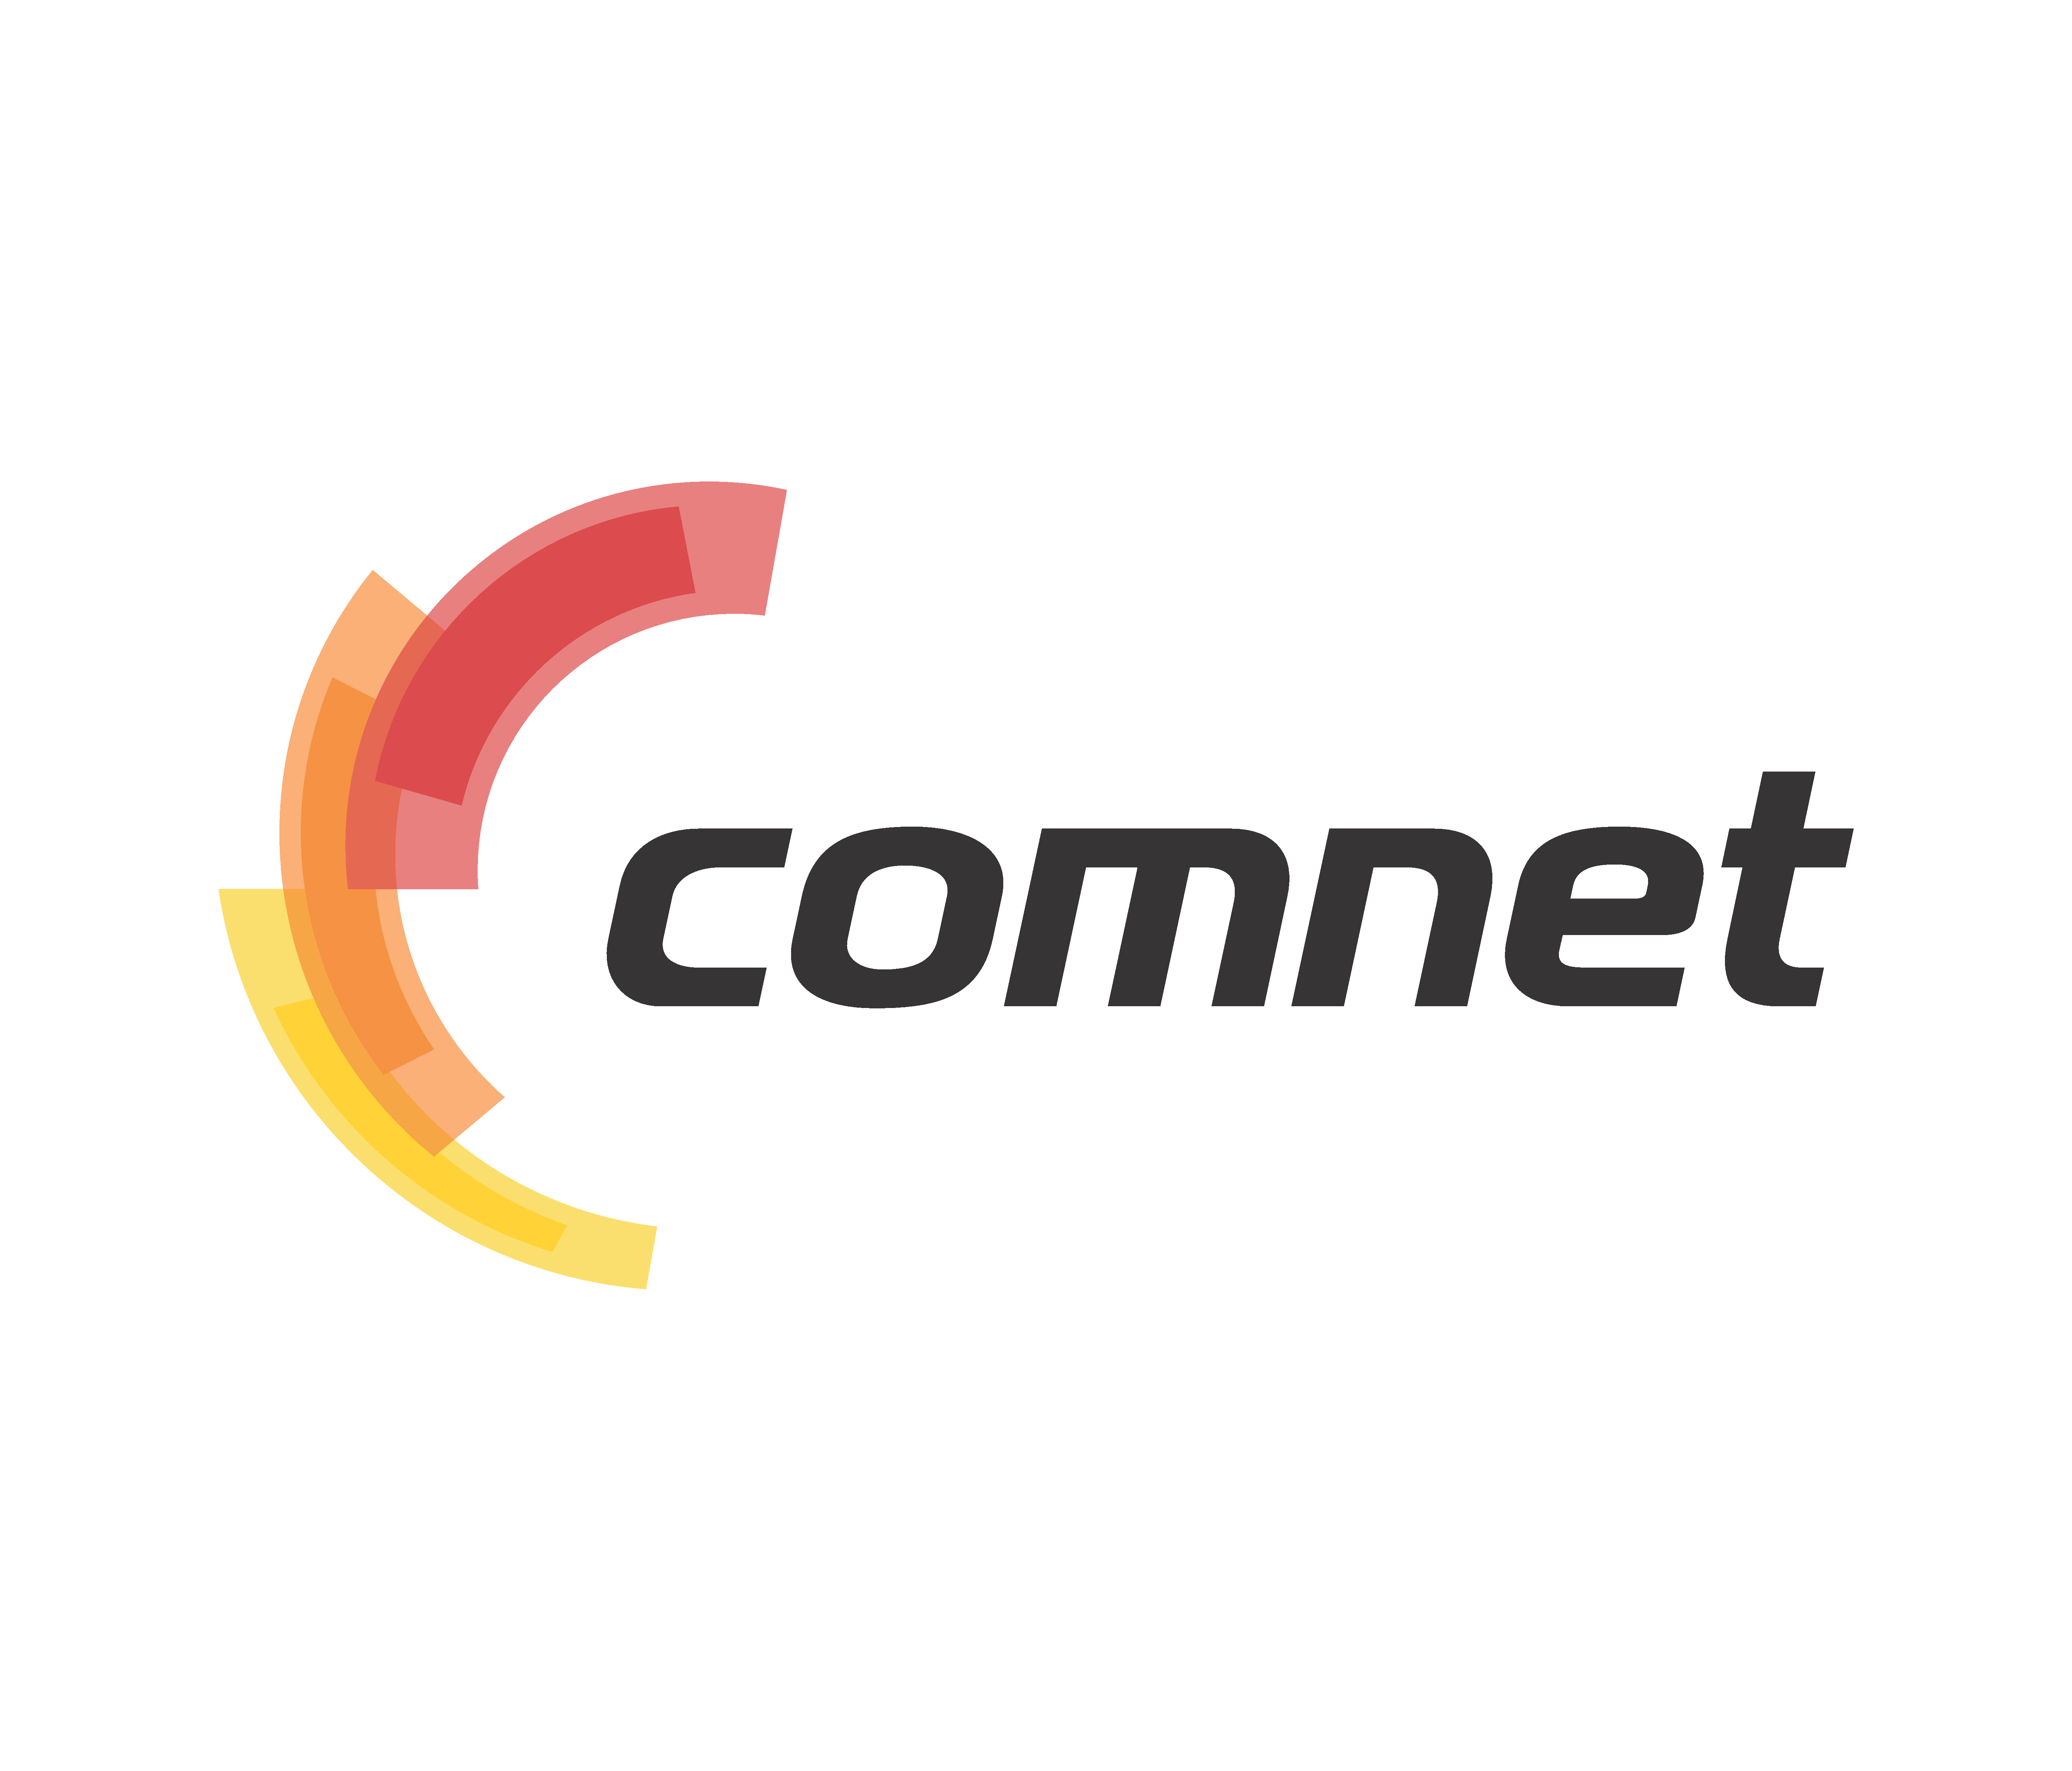 Https dealer uz. COMNET.uz. COMNET logo. Логотип интернет провайдера. COMNET uz logo.